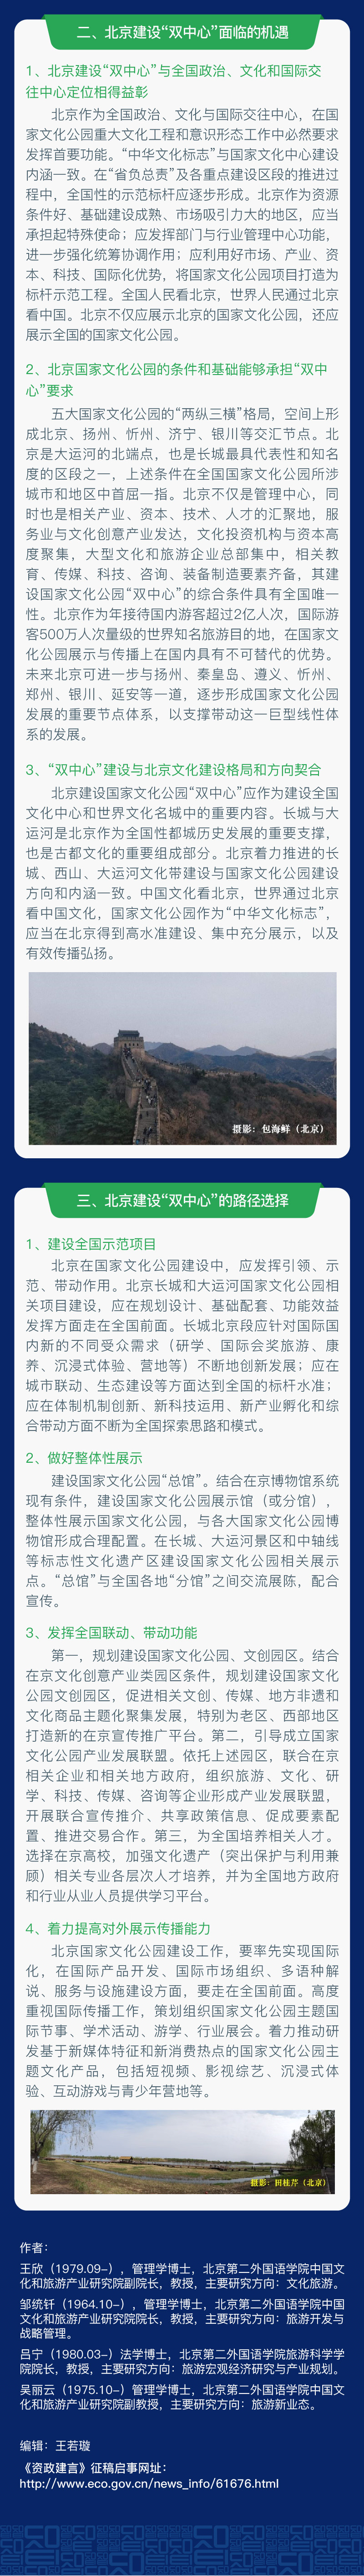 北京建设成为国家文化公园“双中心”的机遇与路径2.jpg